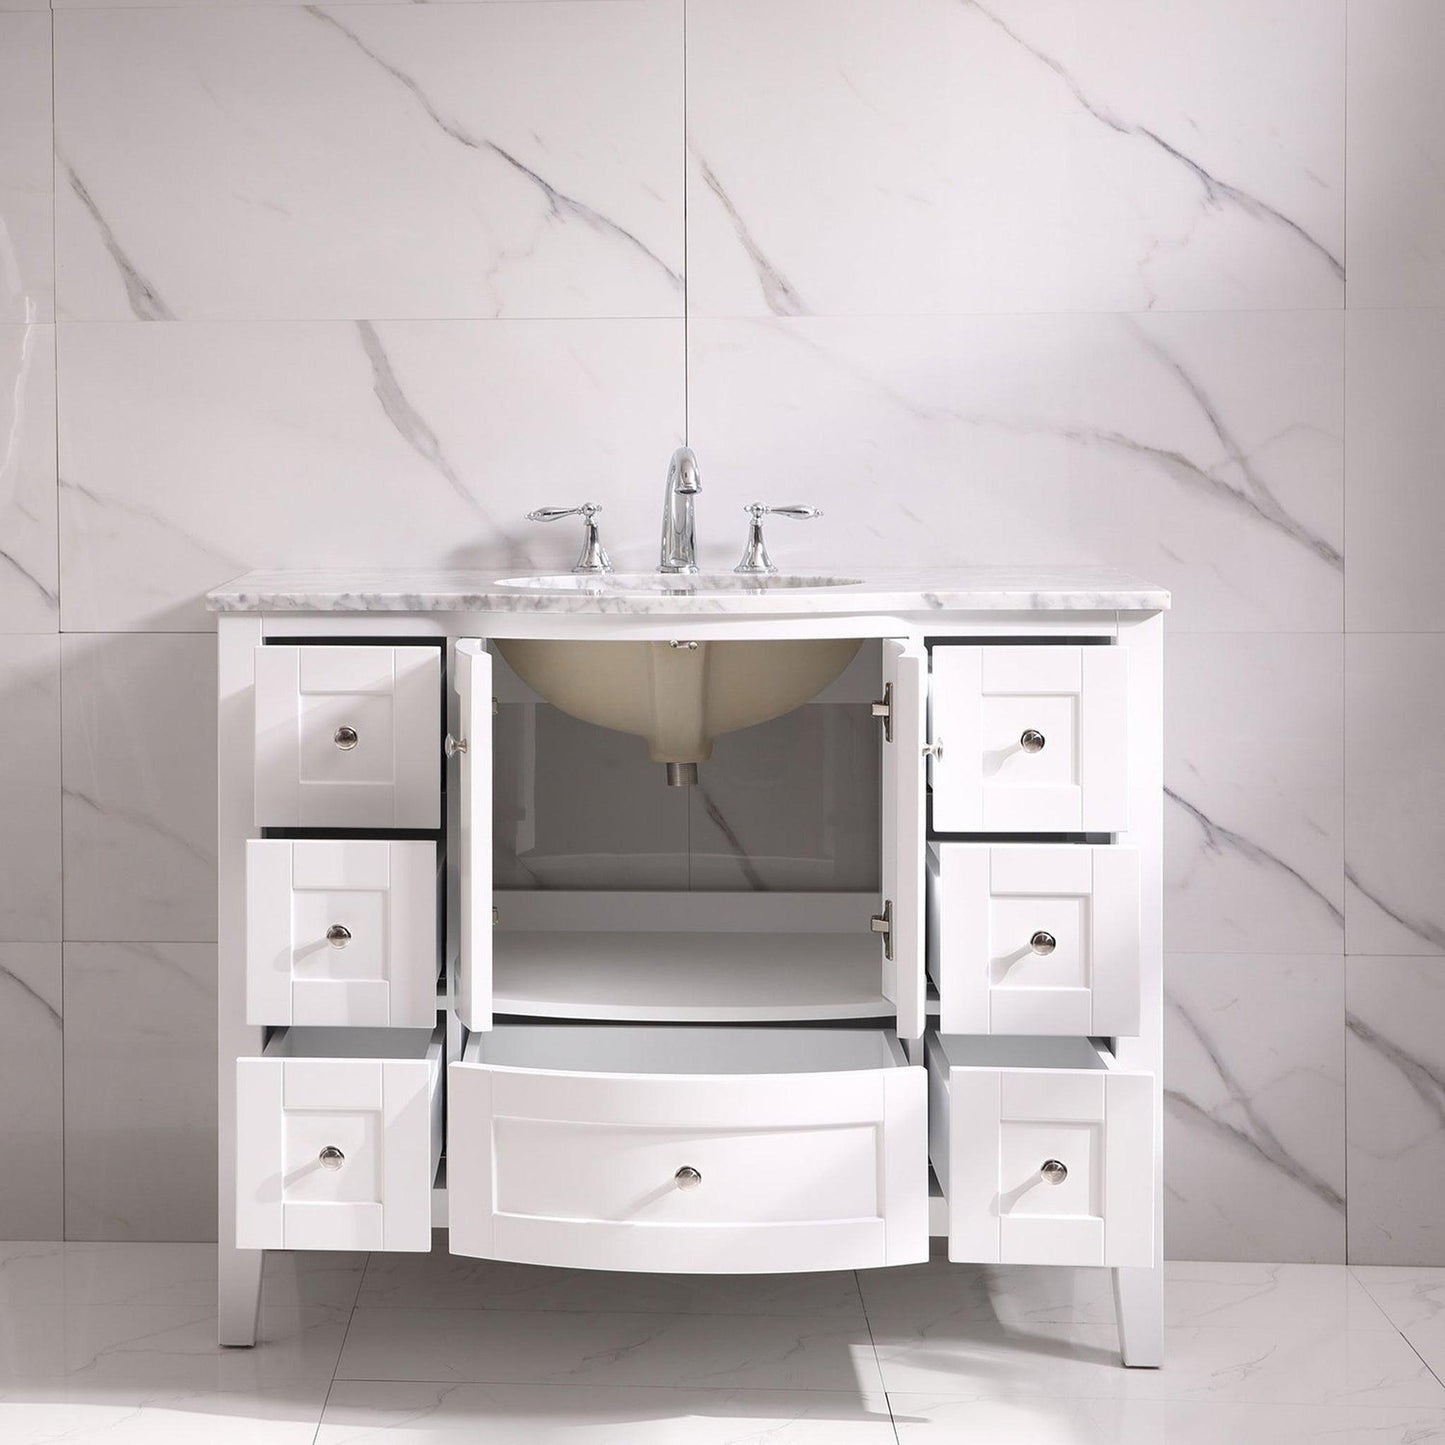 Eviva Stanton 42" x 35" White Freestanding Bathroom Vanity With Single Undermount Sink